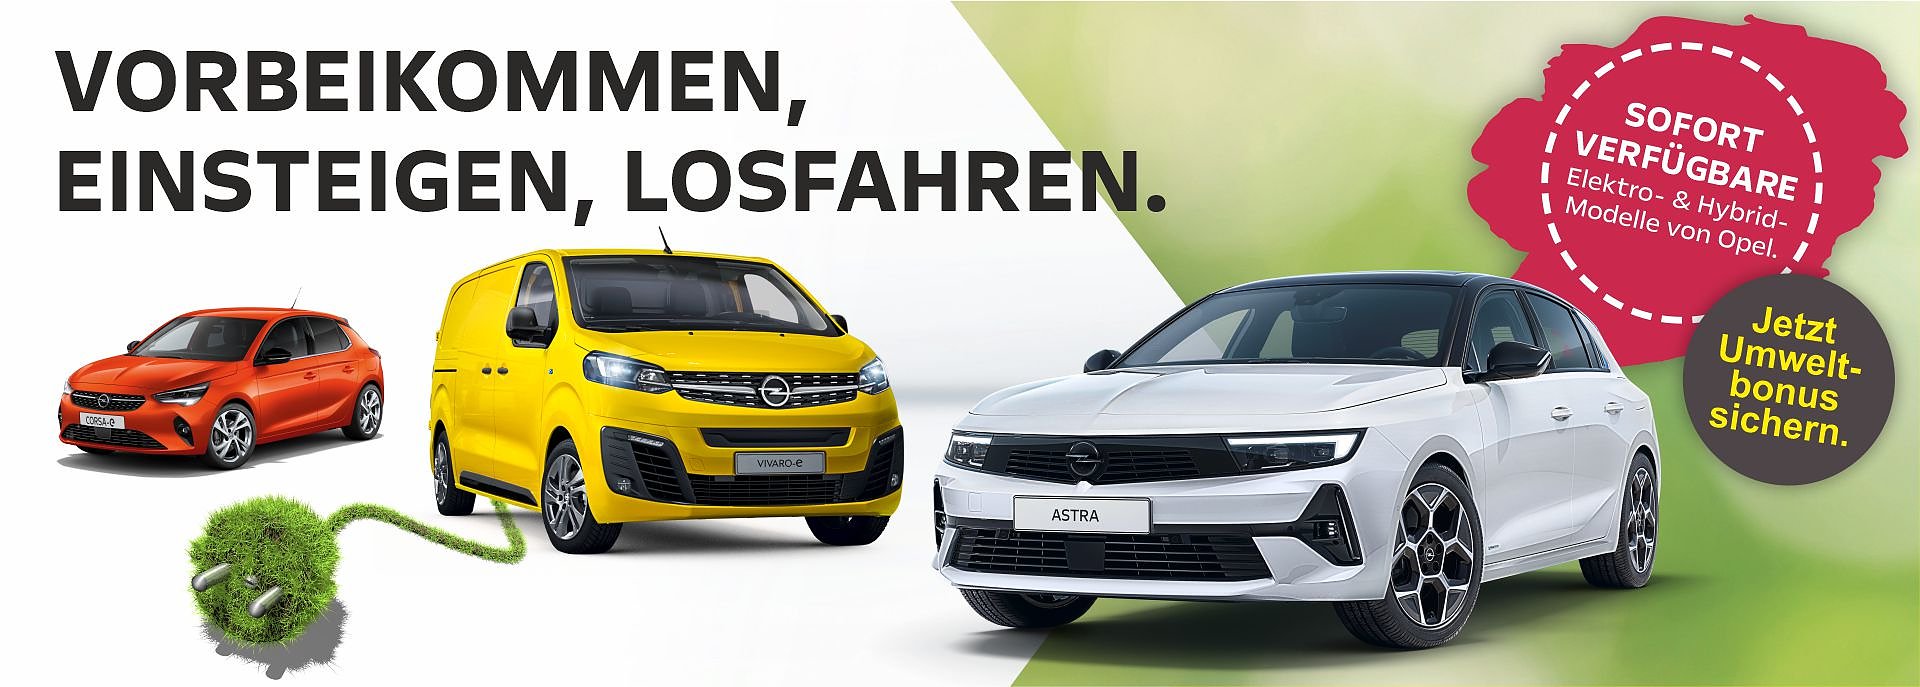 Sofort verfügbare Elektro- & Hybrid-Modelle von Opel.